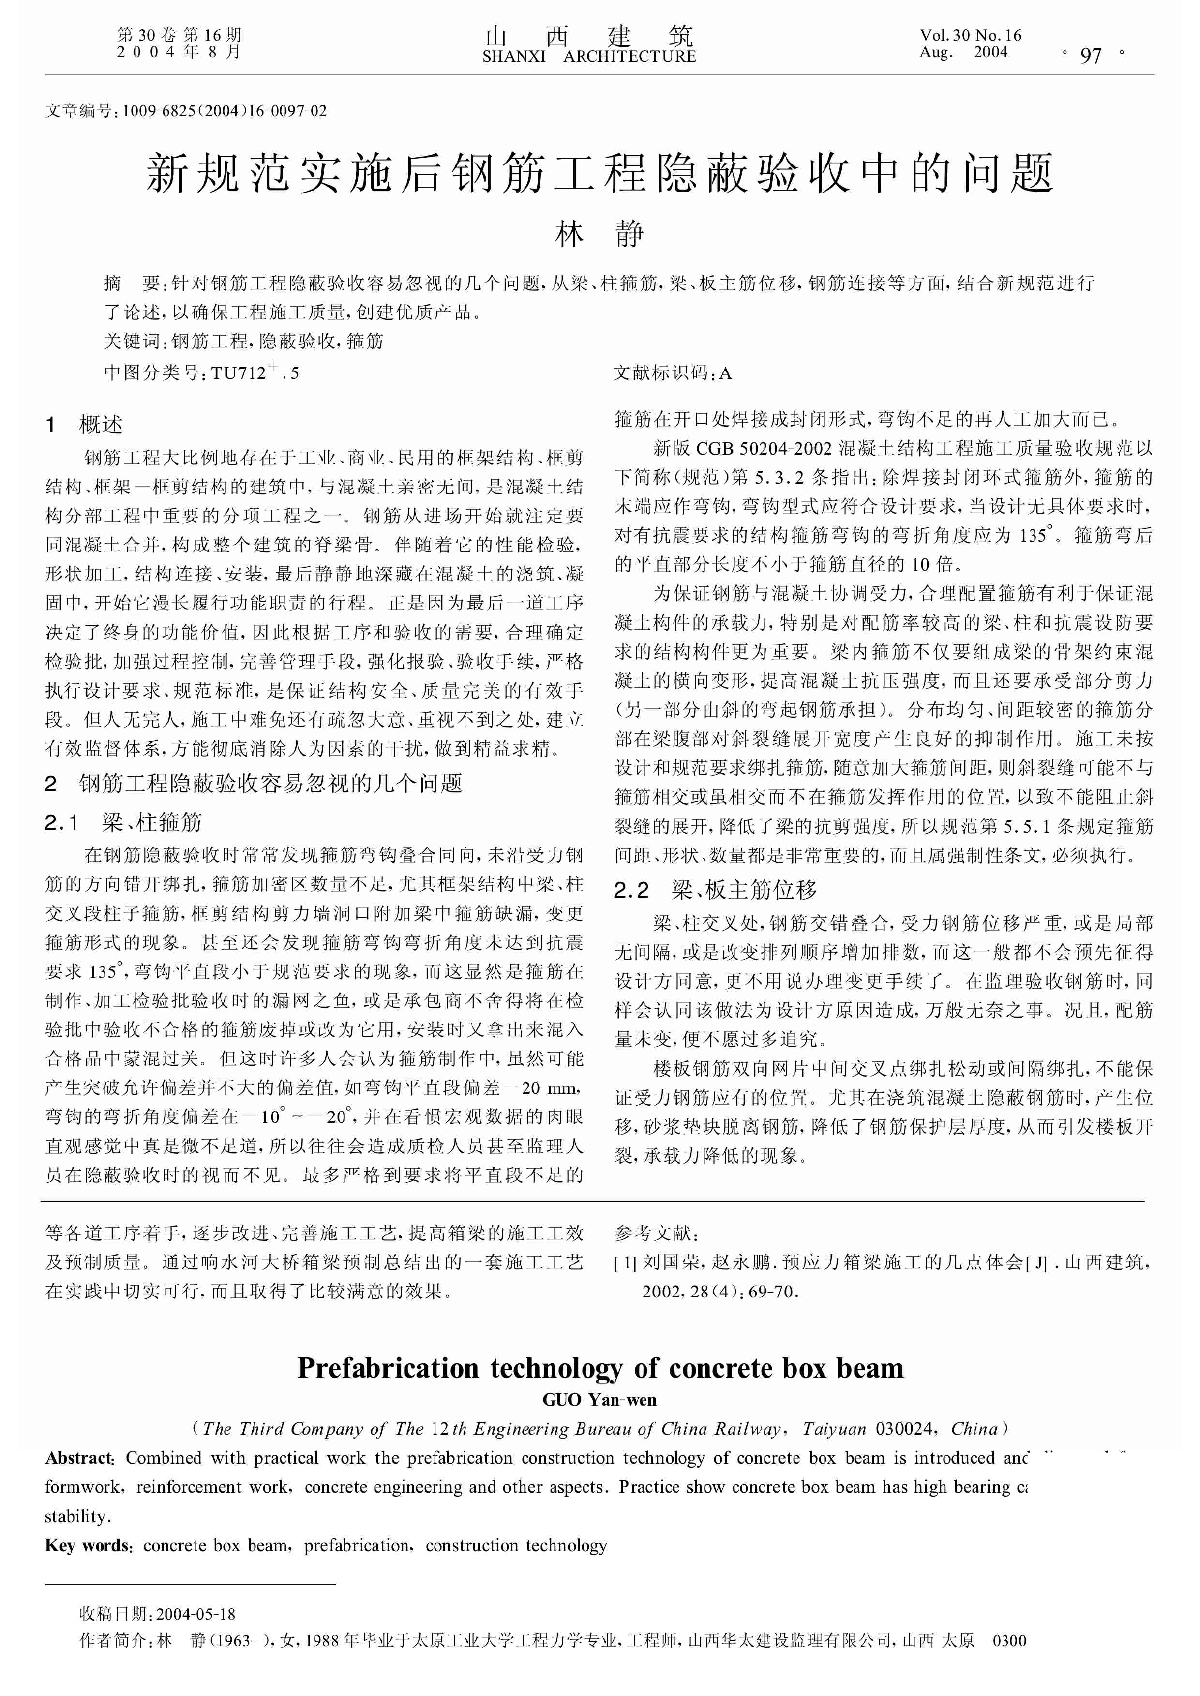 新规范实施后钢筋工程隐蔽验收中的问题_林静.pdf